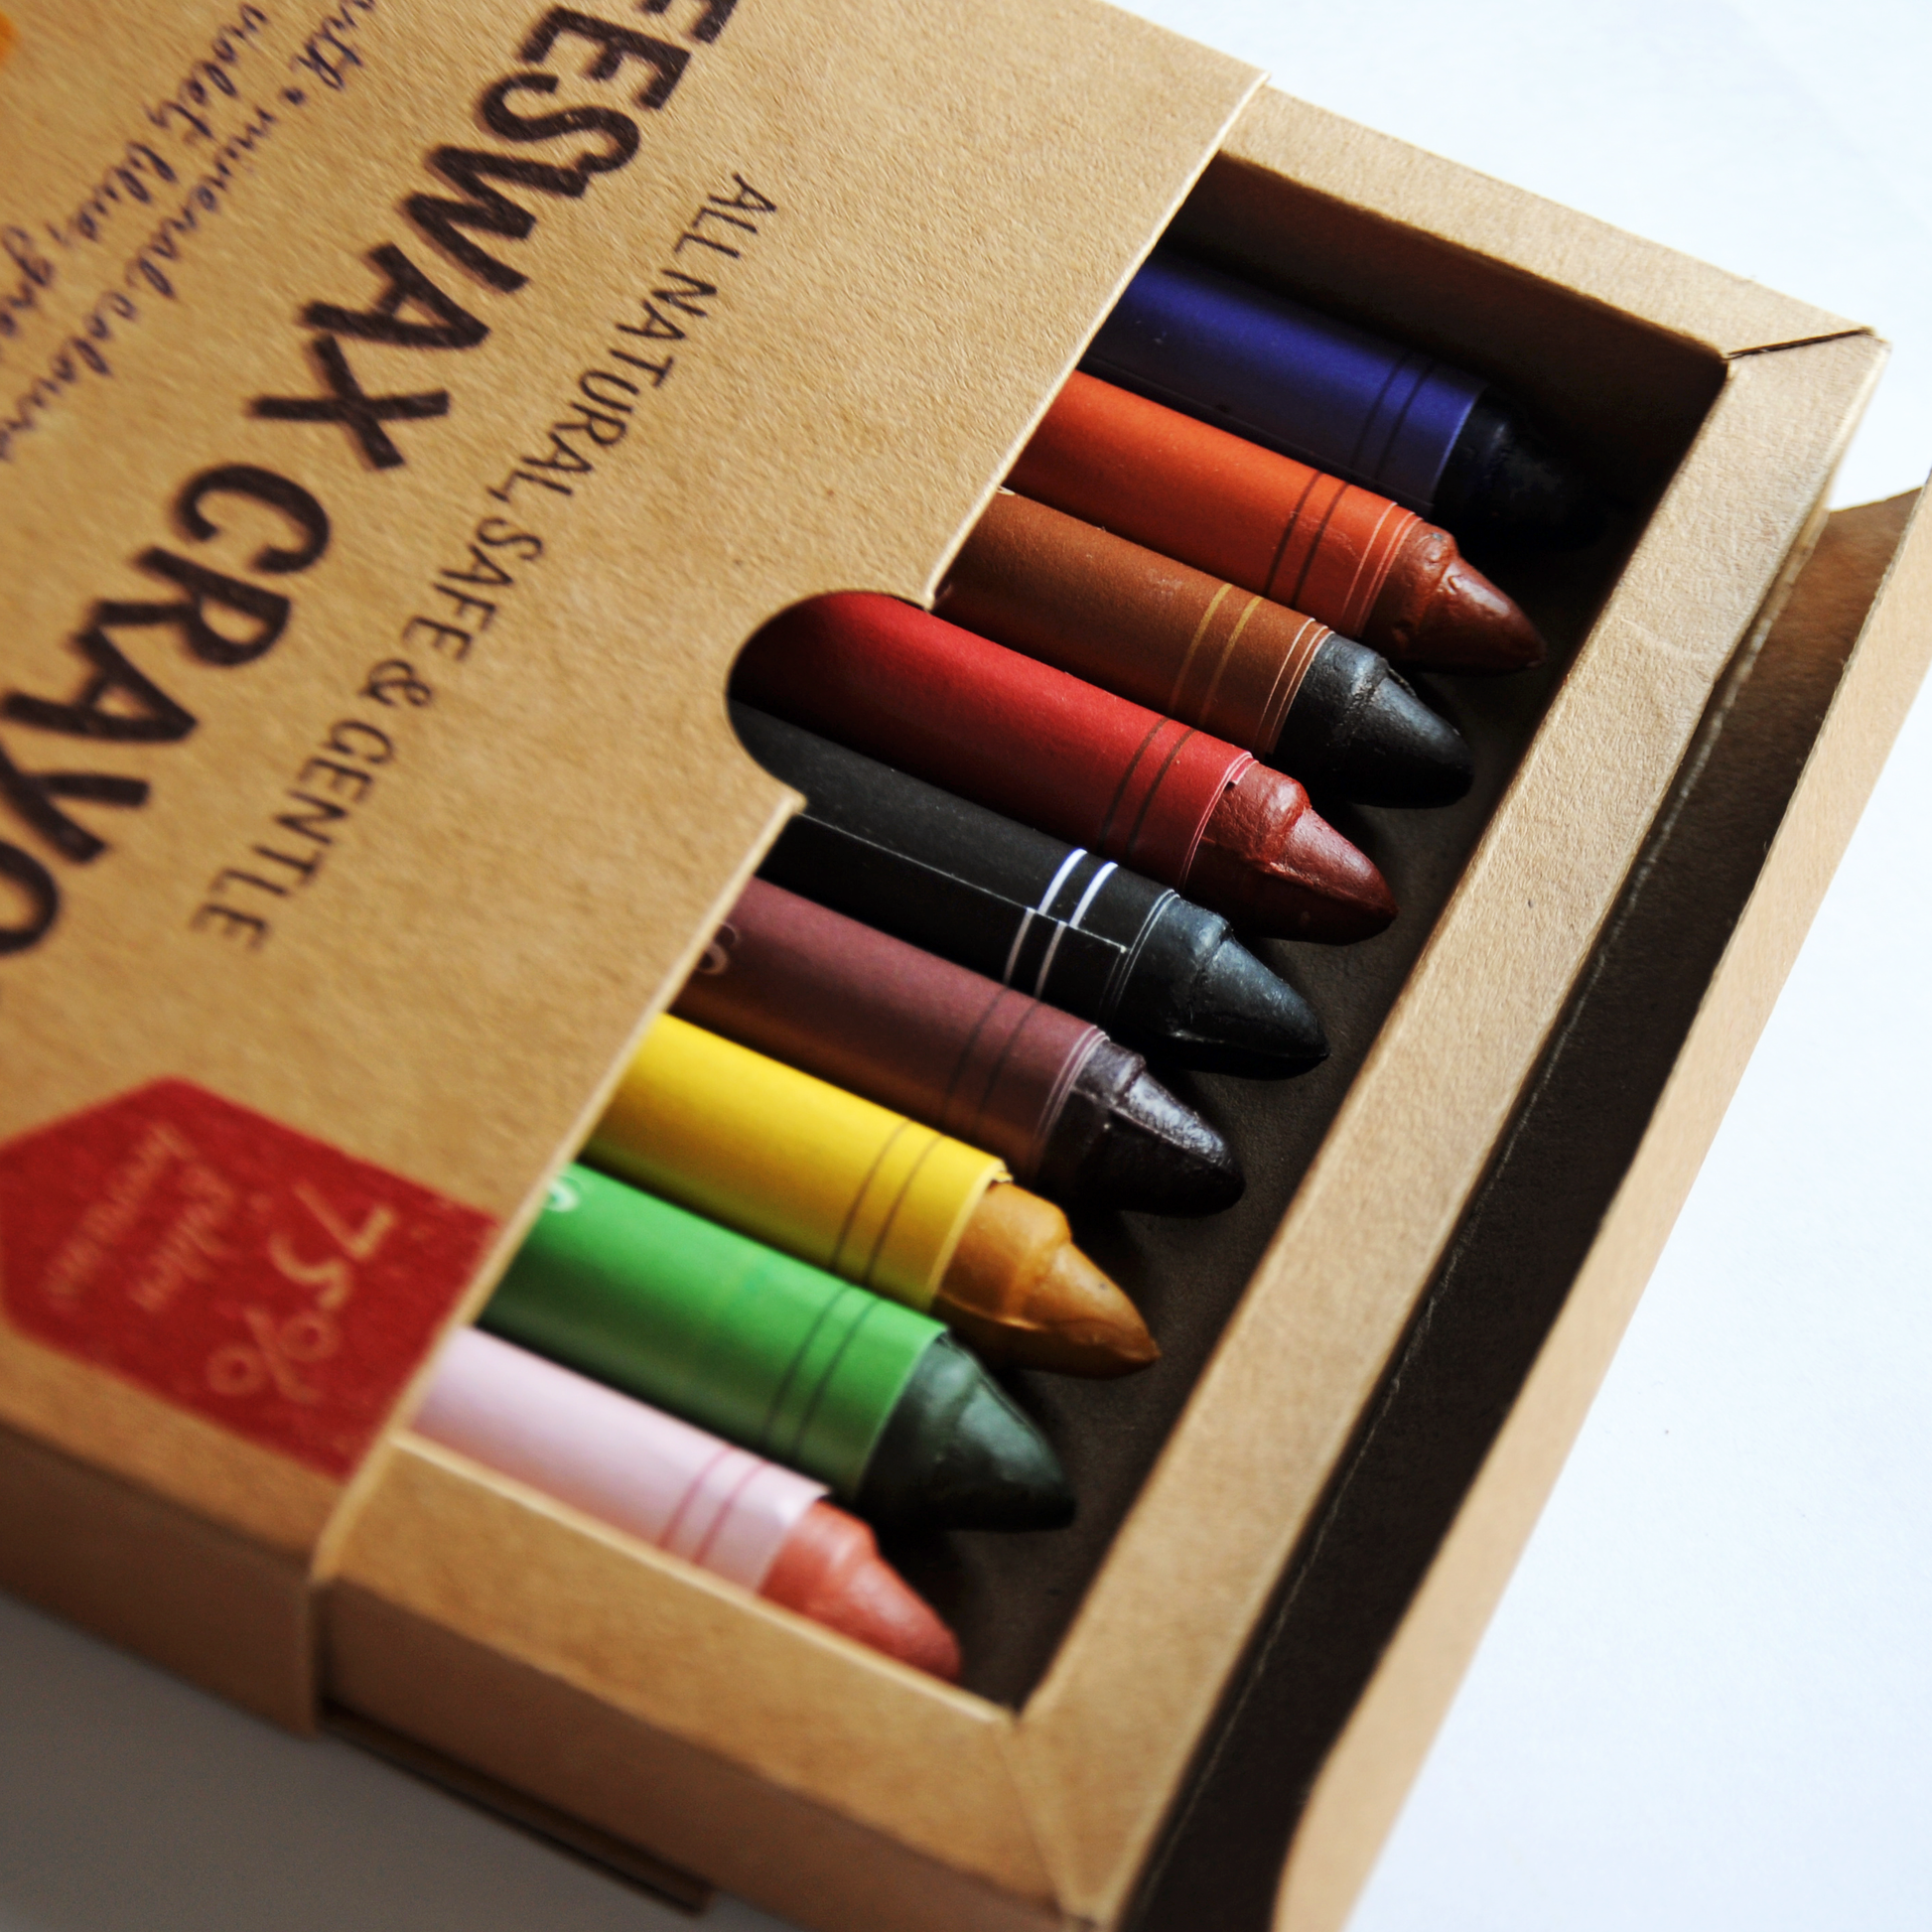 Natural Beeswax Crayons – The Yarn Tree - fiber, yarn and natural dyes